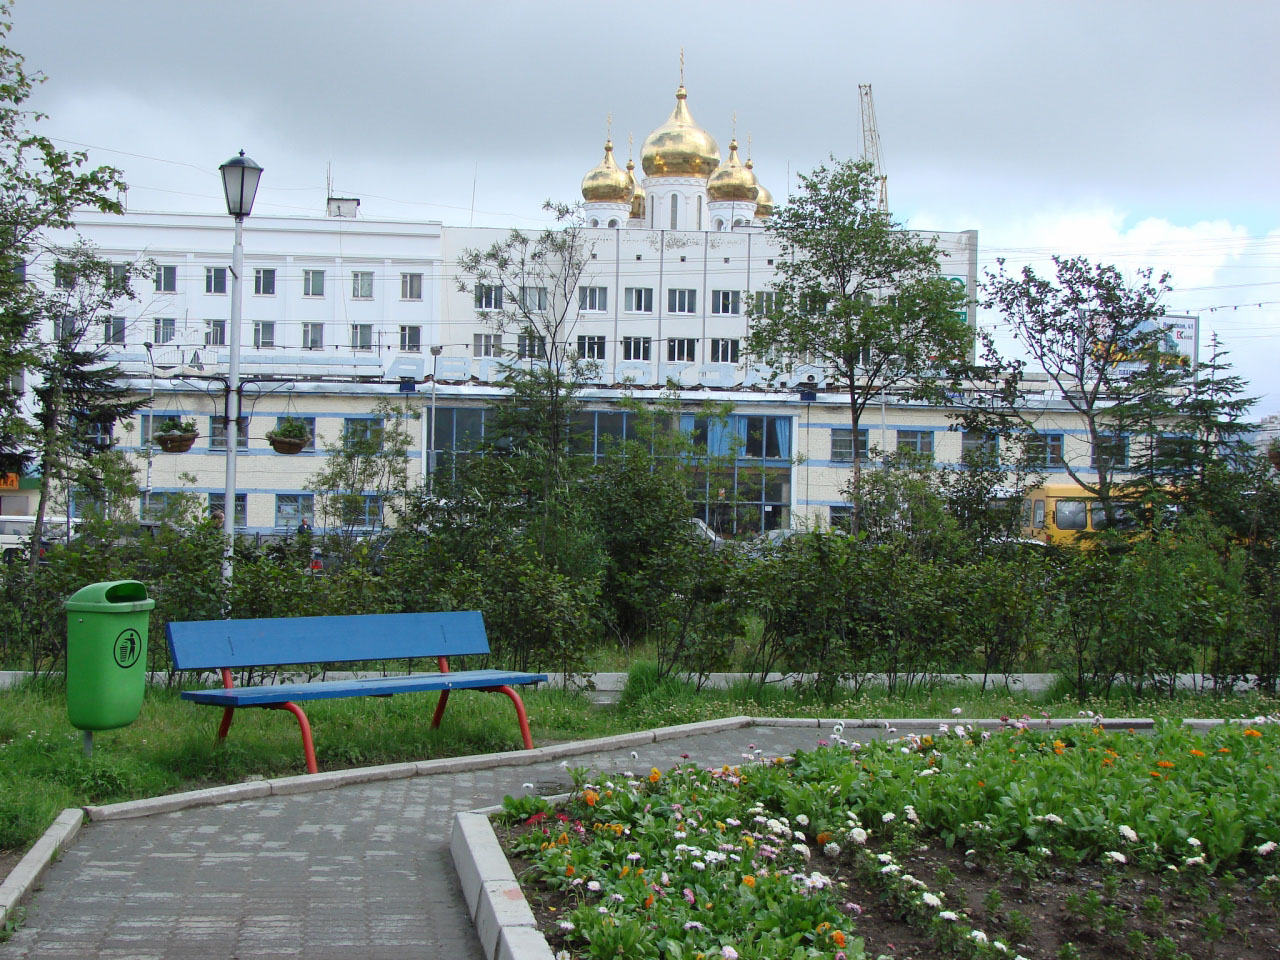 Сквер на месте Дом связи (телеграфа), построенный по проекту М.Ф. Булычева (позднее – Ленина, 2). Здание снесено в начале 1990-х.